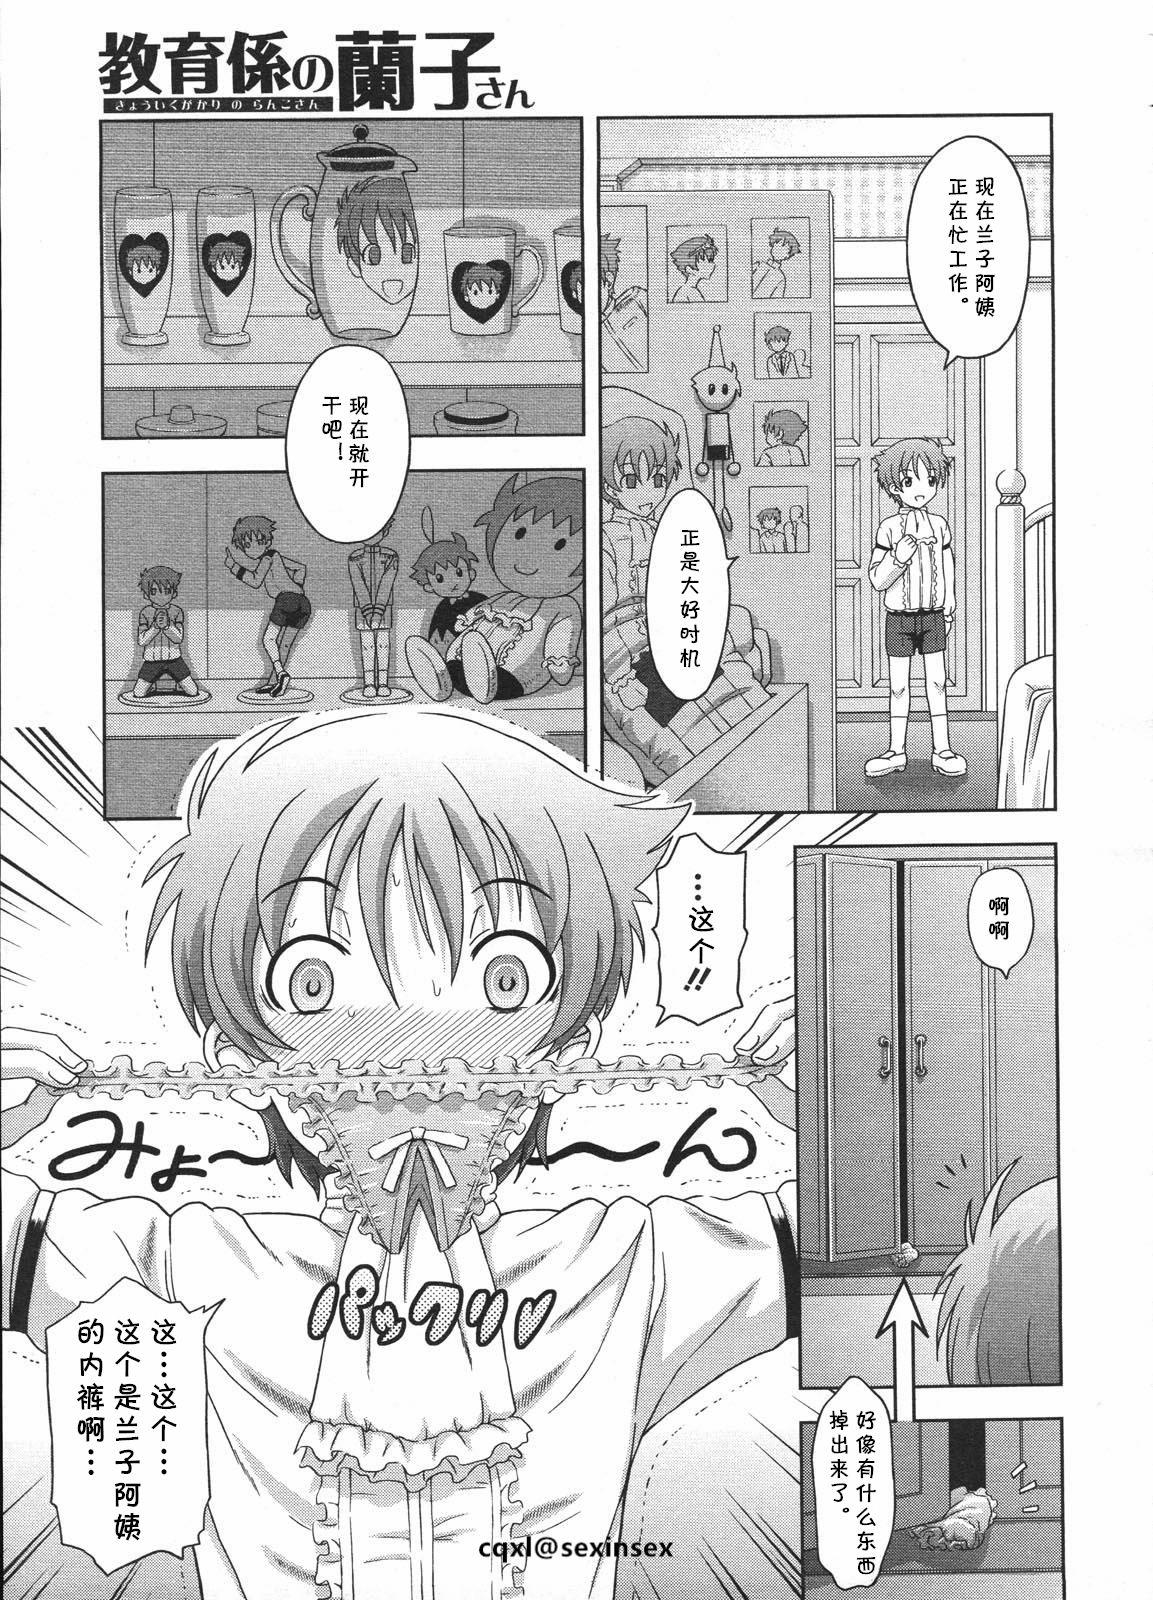 3way Kyouikugakari no Ranko-san Spooning - Page 5